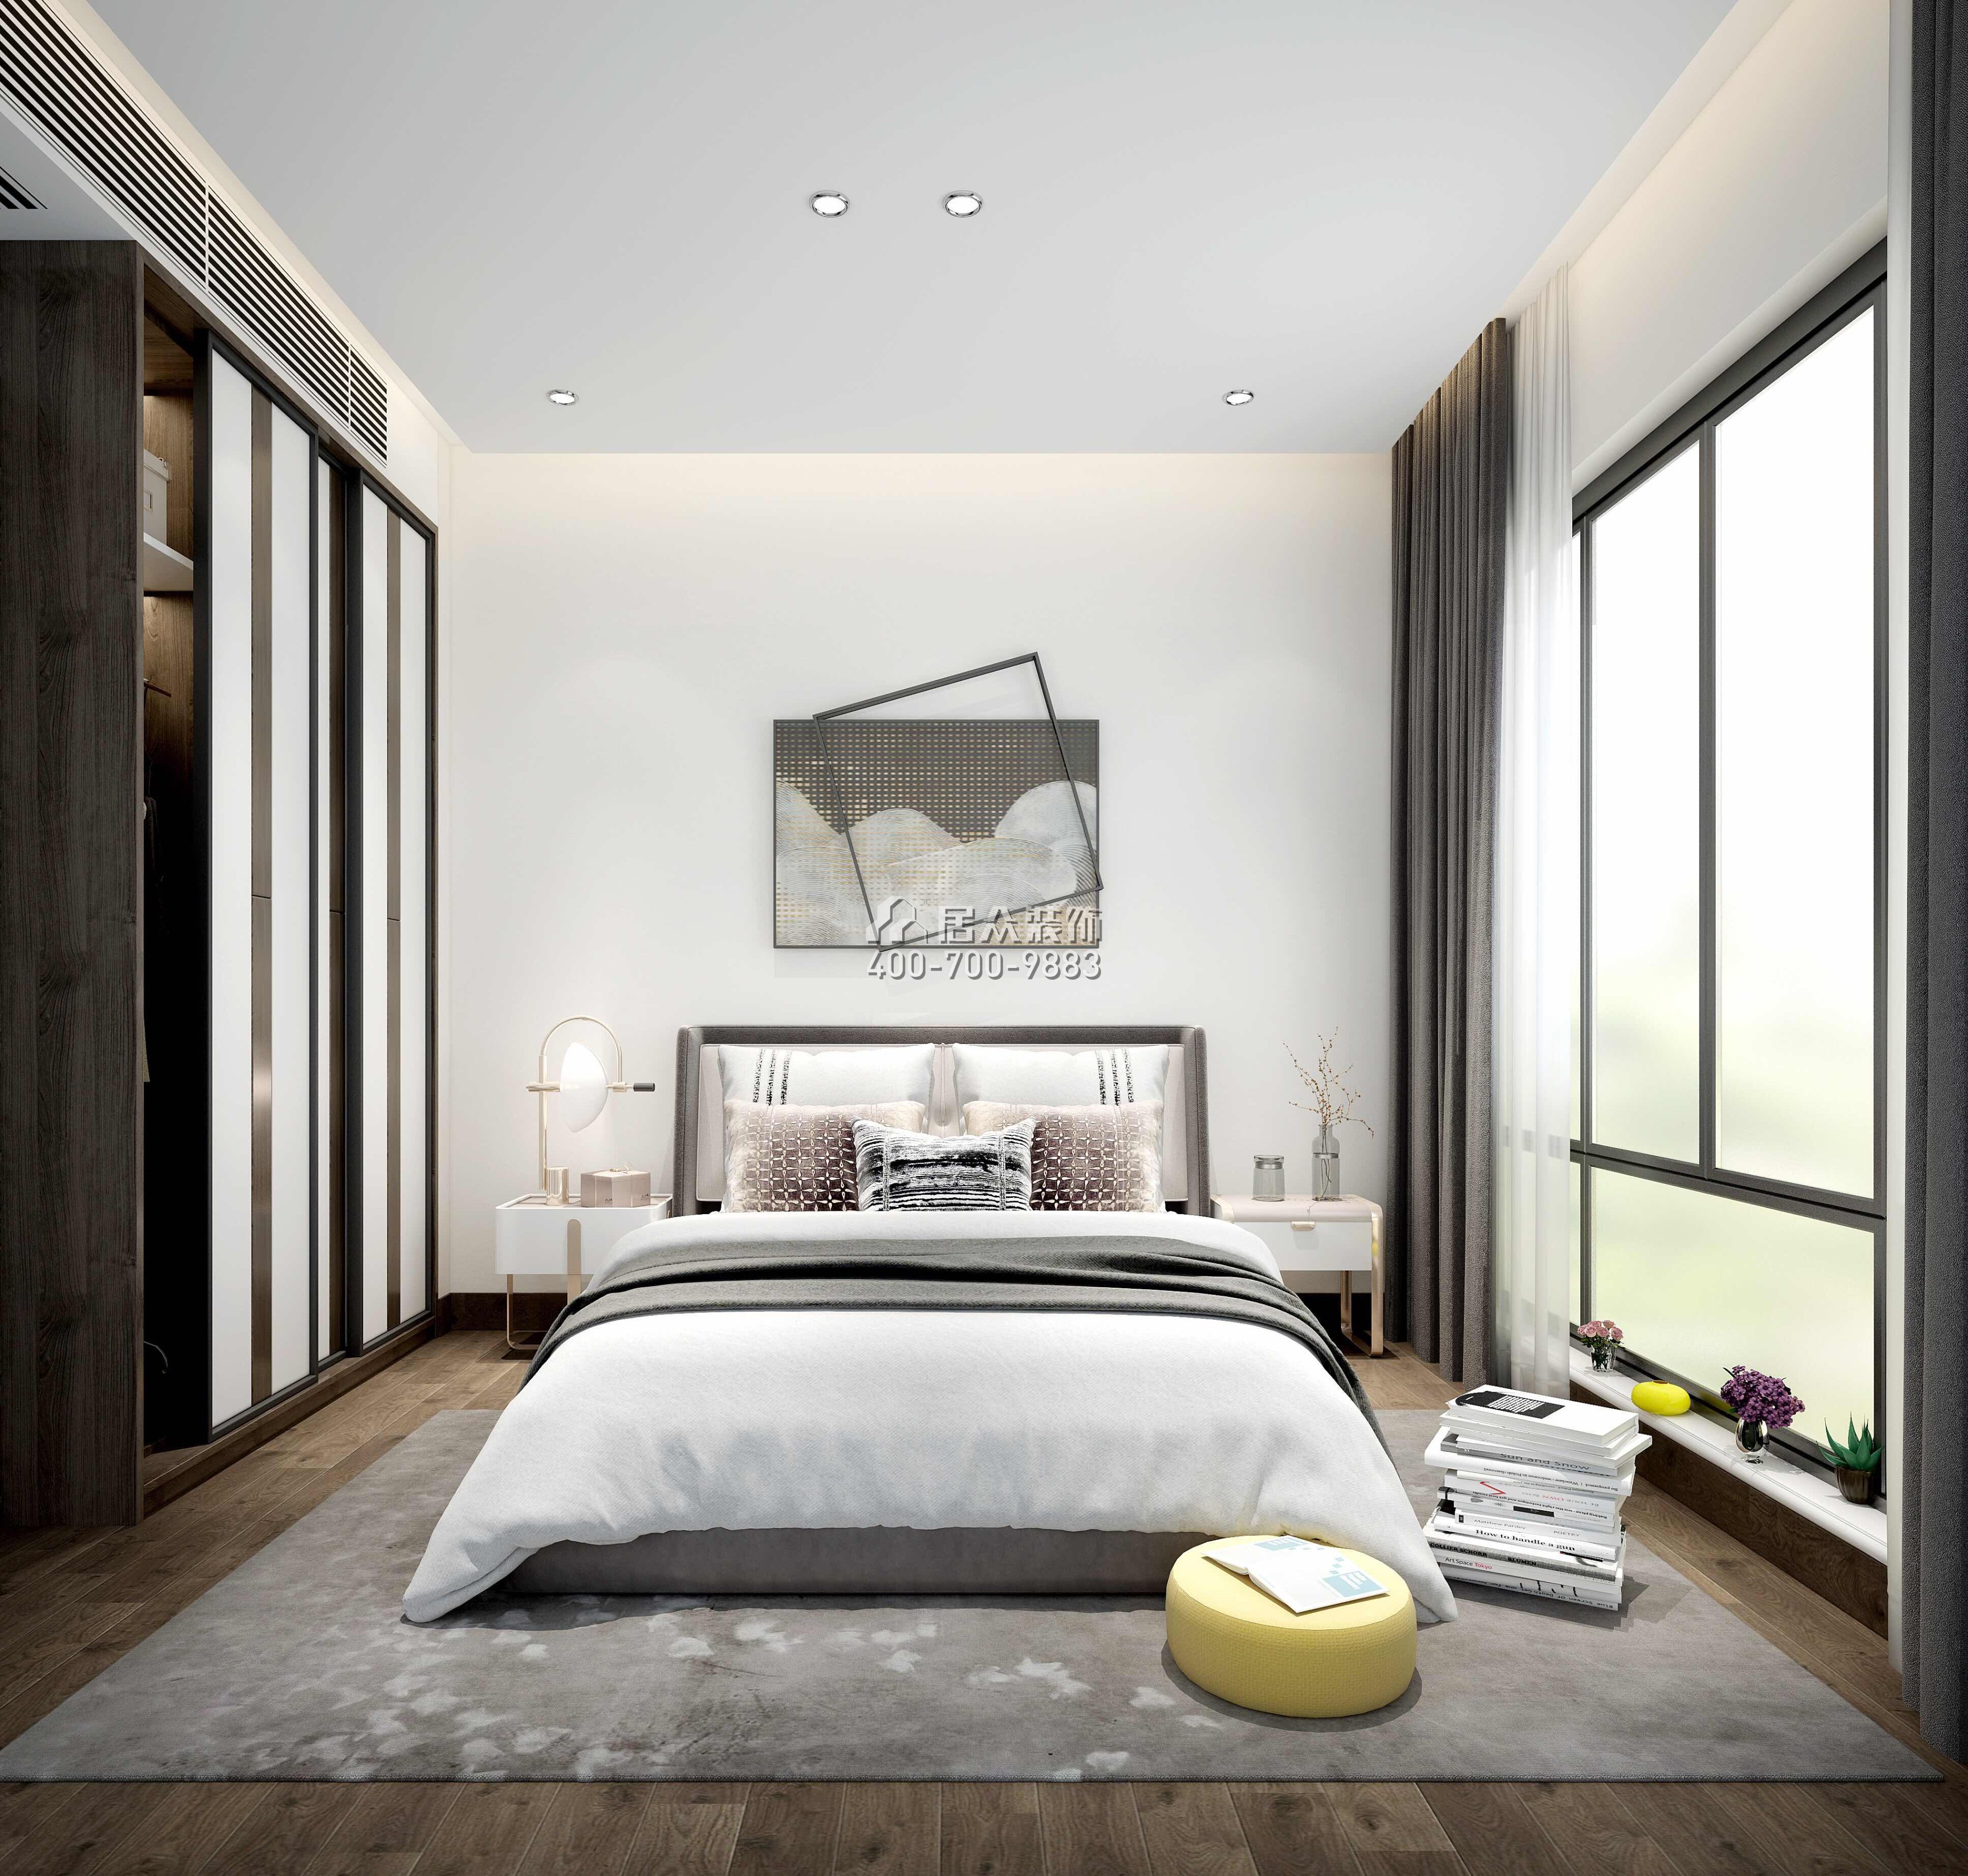 锦东花园A区196平方米现代简约风格平层户型卧室装修效果图